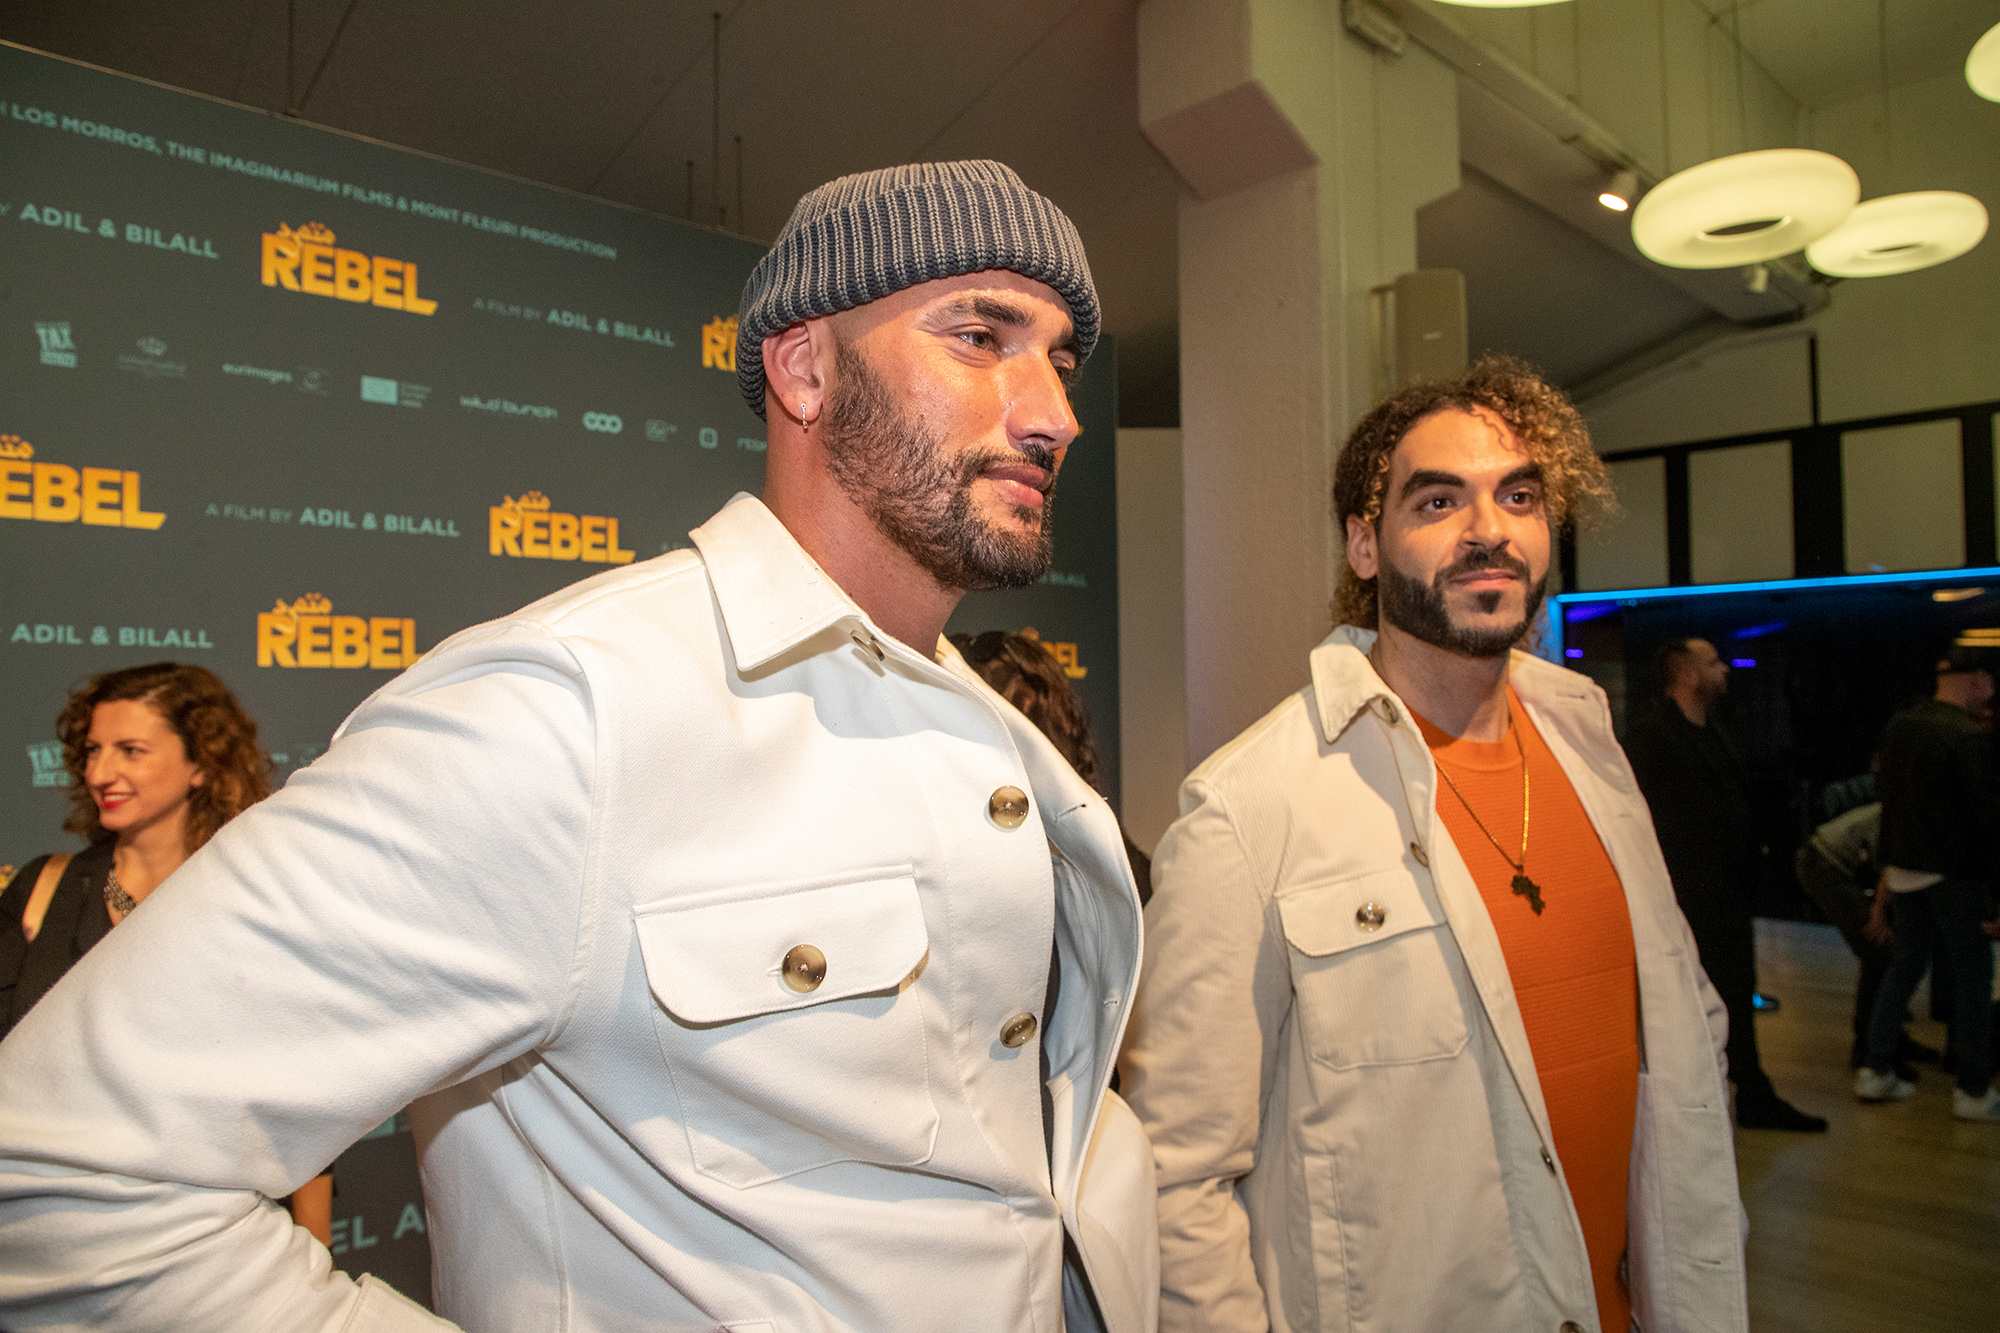 Bilall Fallah und Adil El Arbi bei der Premiere von "Rebel" (Bild: Nicolas Maeterlinck/Belga)